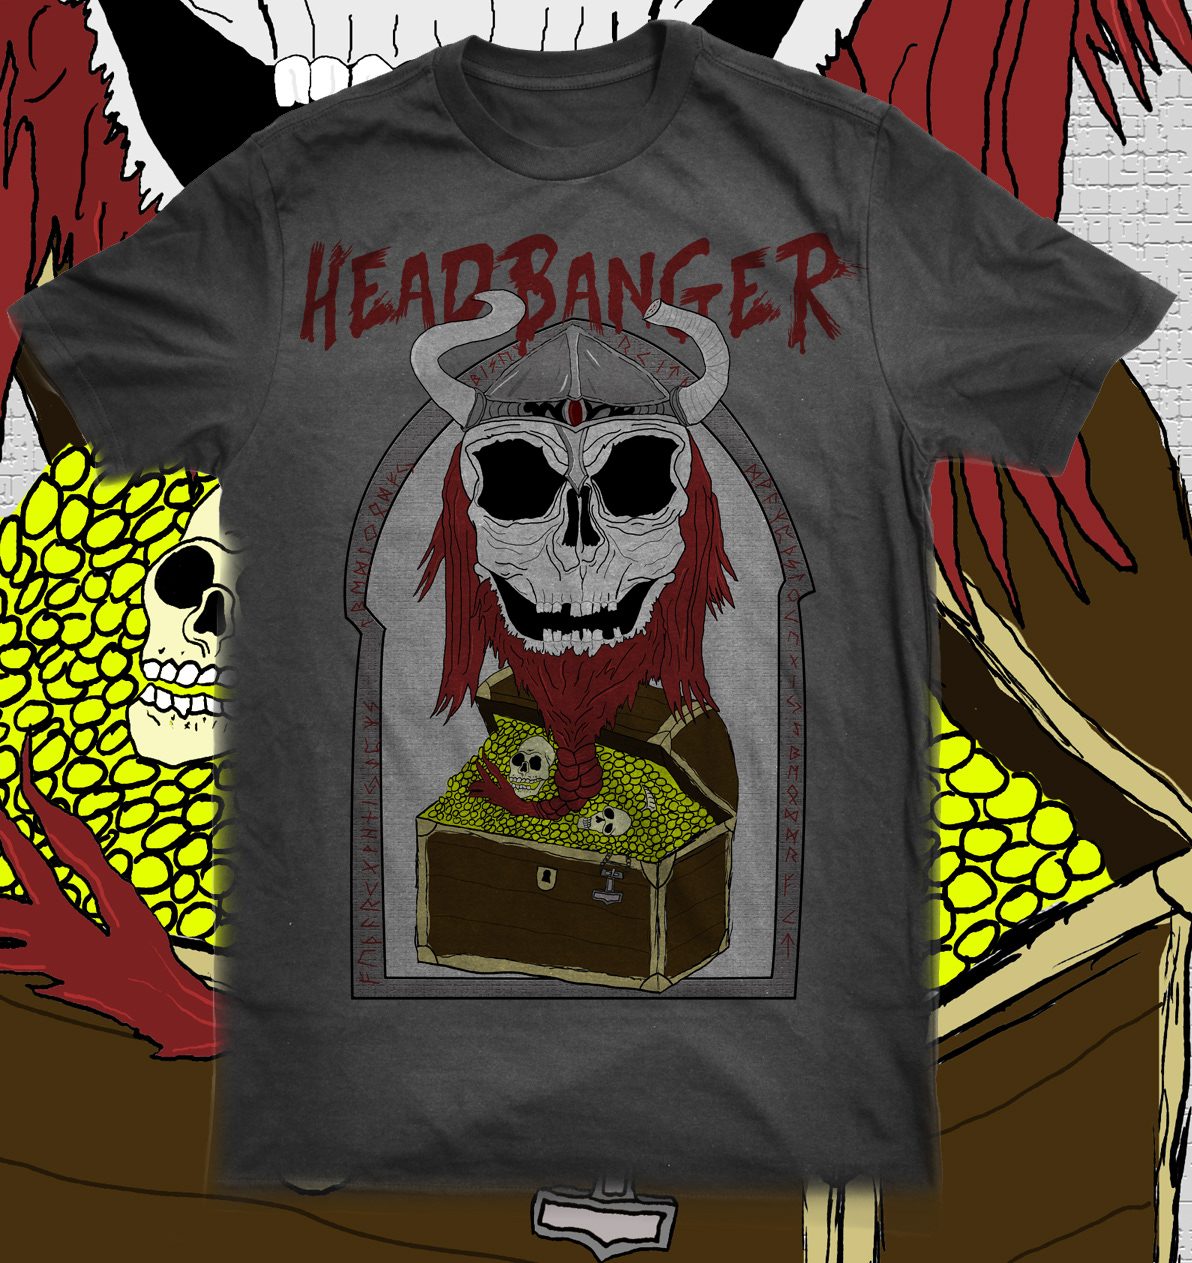 Headbanger Clothing  t-shirt headbanger viking skull streetwear brand